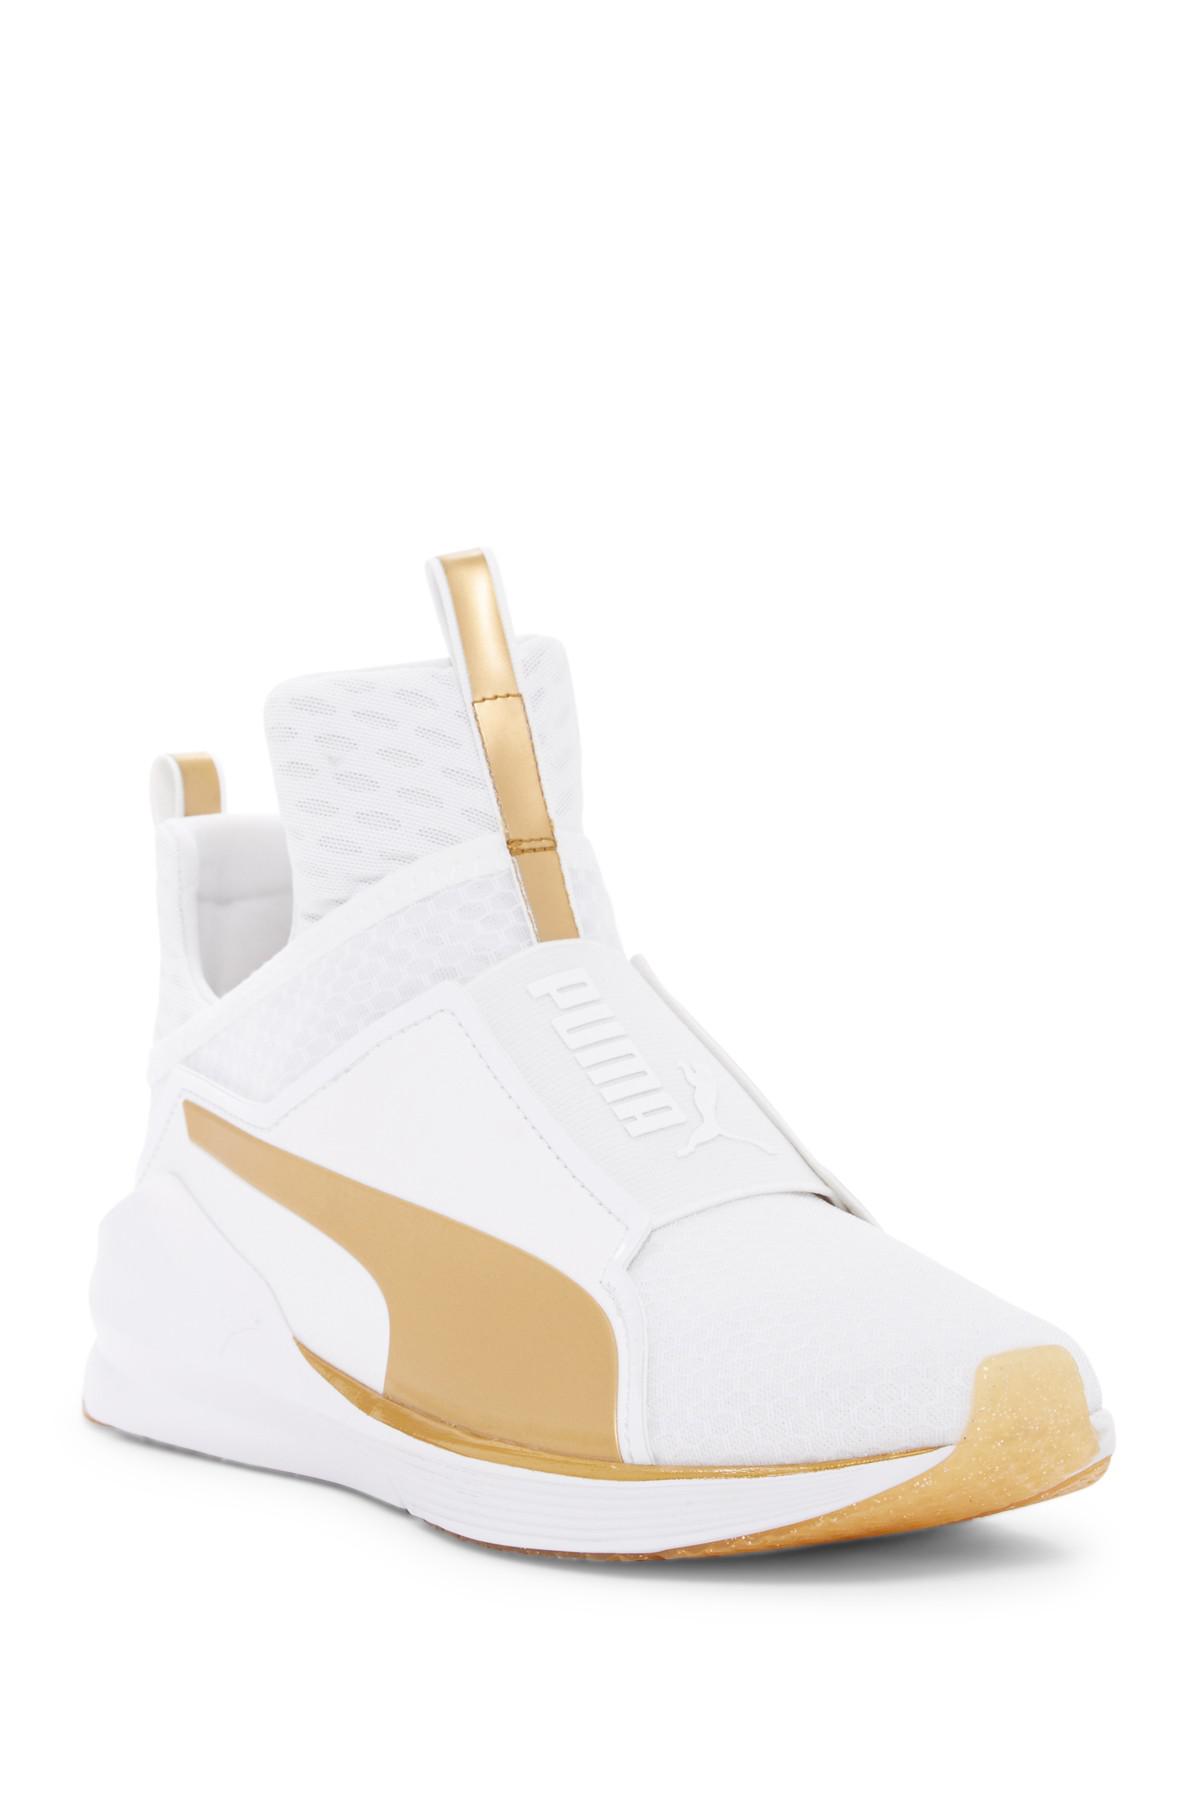 PUMA Synthetic Fierce Gold Sneaker in White - Lyst